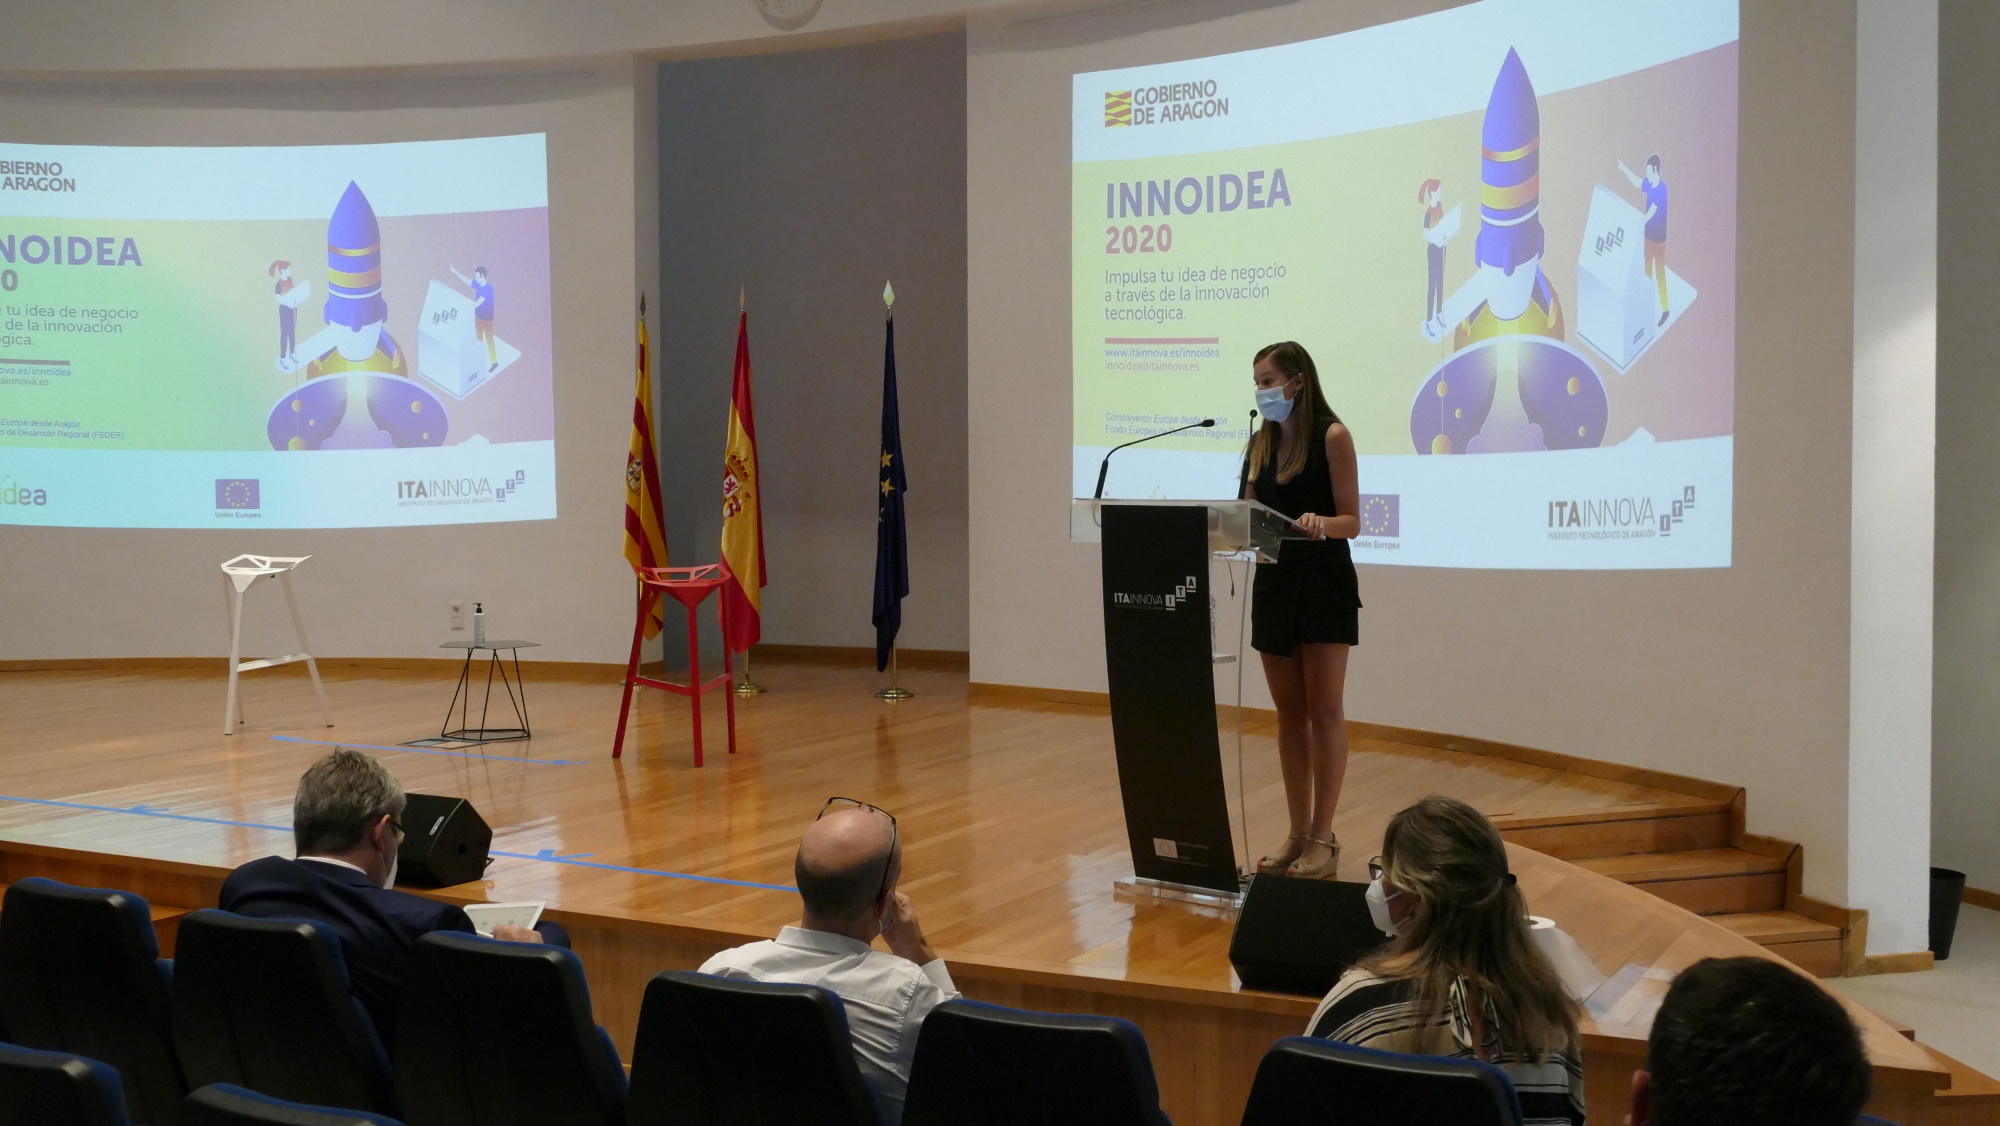 Doce start-ups y emprendedores aragoneses desarrollarán proyectos tecnológicos y de innovación gracias al apoyo de ITAINNOVA en INNOIDEA